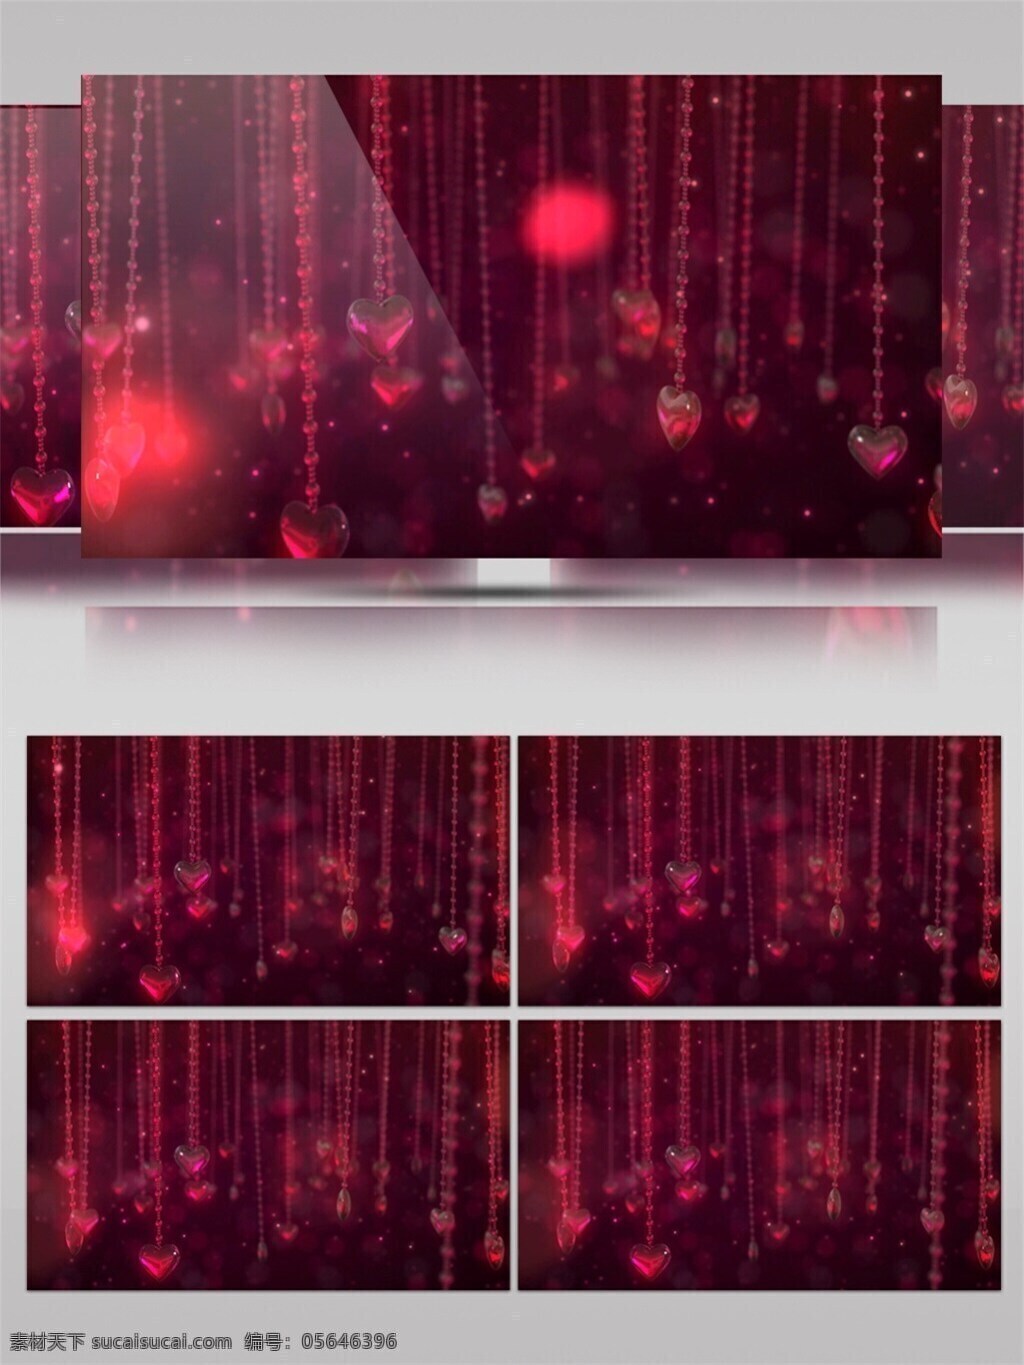 红色 爱心 瀑布 视频 3d视频素材 酒吧舞台 梦幻 特效视频素材 晚会舞台背景 舞台灯光